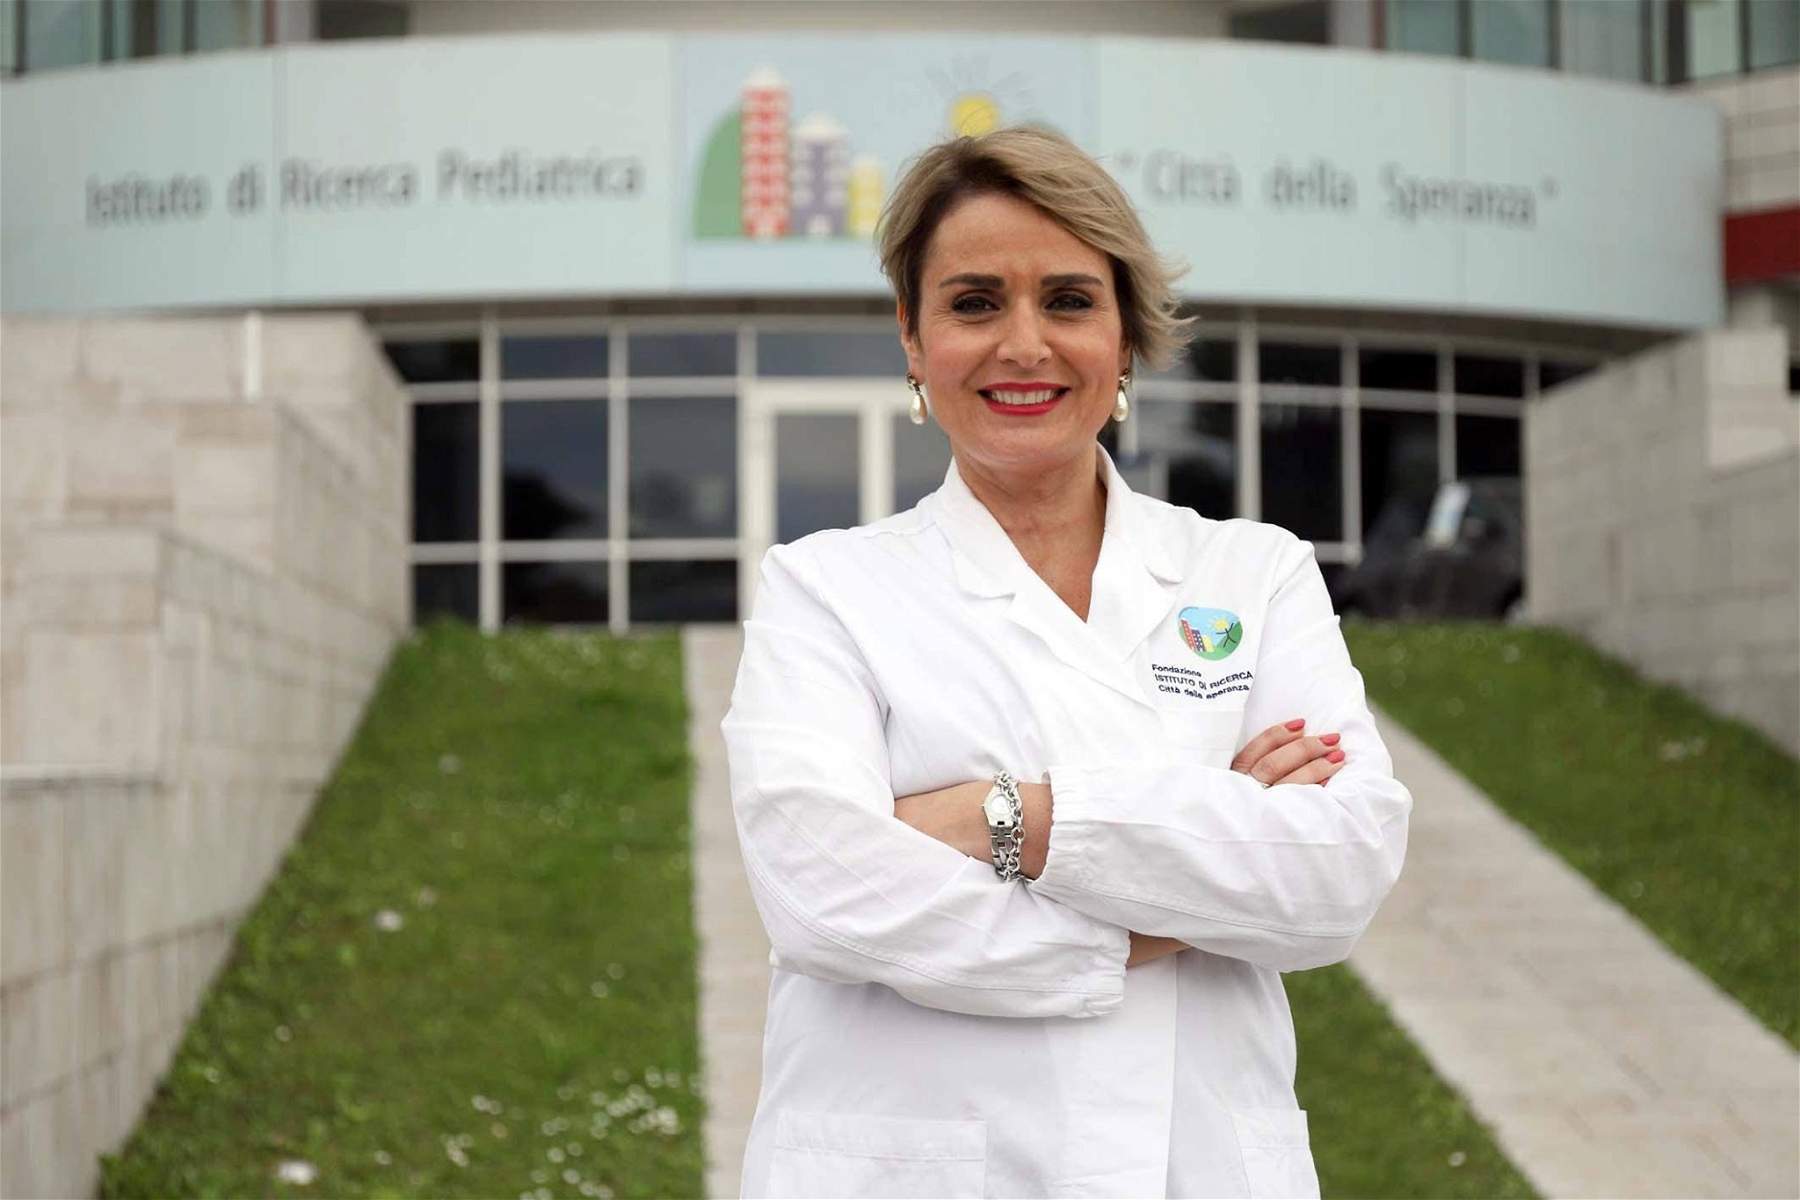 L'immunologa Antonella Viola contro le chiusure: “decisione irrazionale, cieca, assurda”